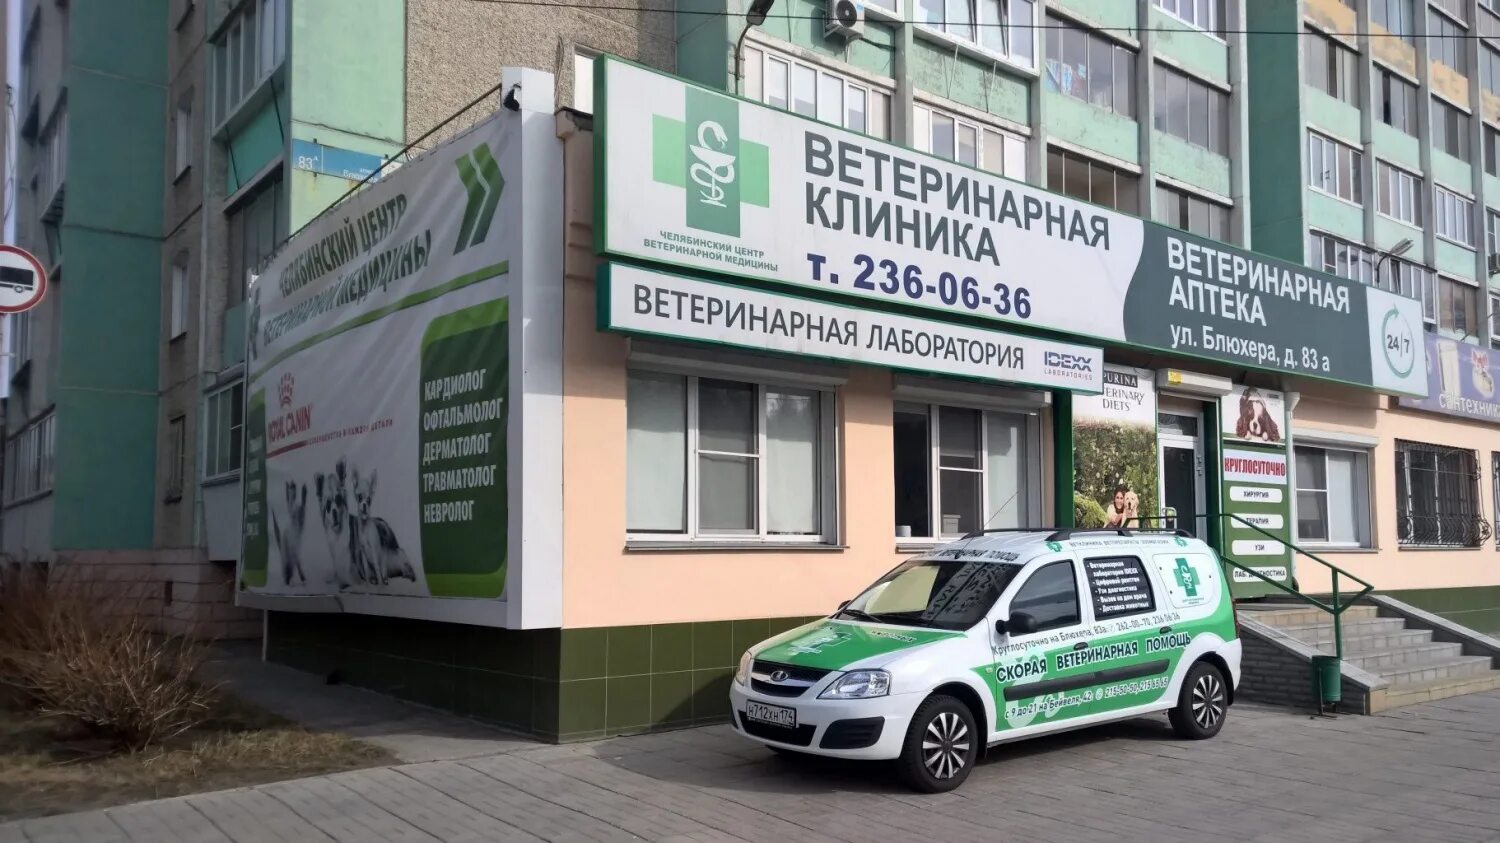 Ветеринарная клиника Блюхера 83а. Ветеринарная клиника на Блюхера Челябинск. Блюхера 83. Блюхера 83 Челябинск.